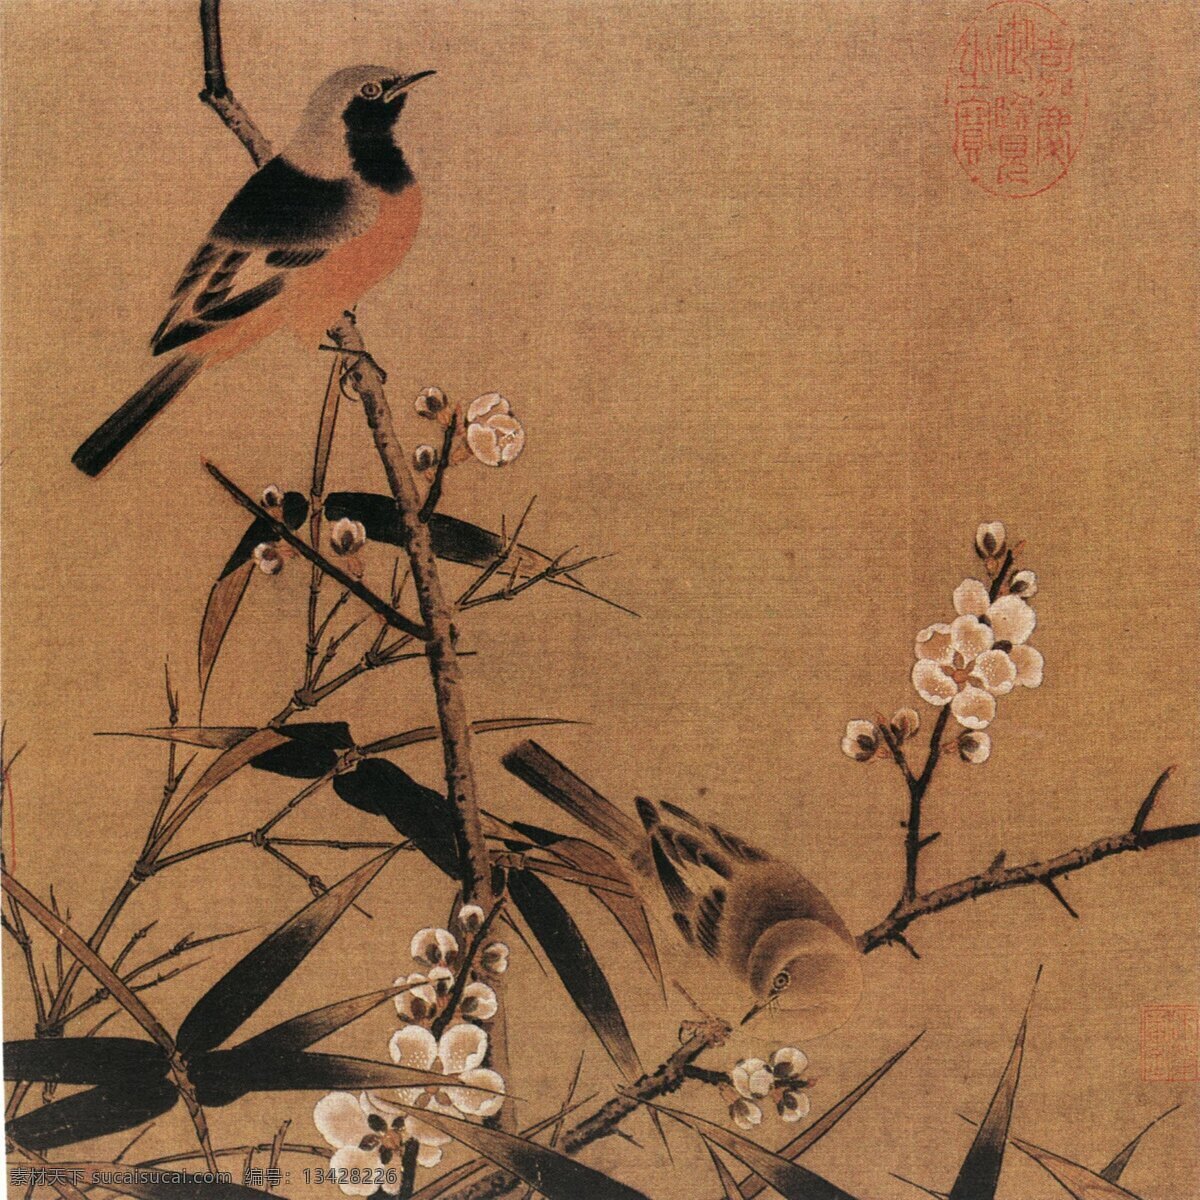 中国 传世 名画 花鸟画 中国传世名画 古典花鸟画 文化艺术